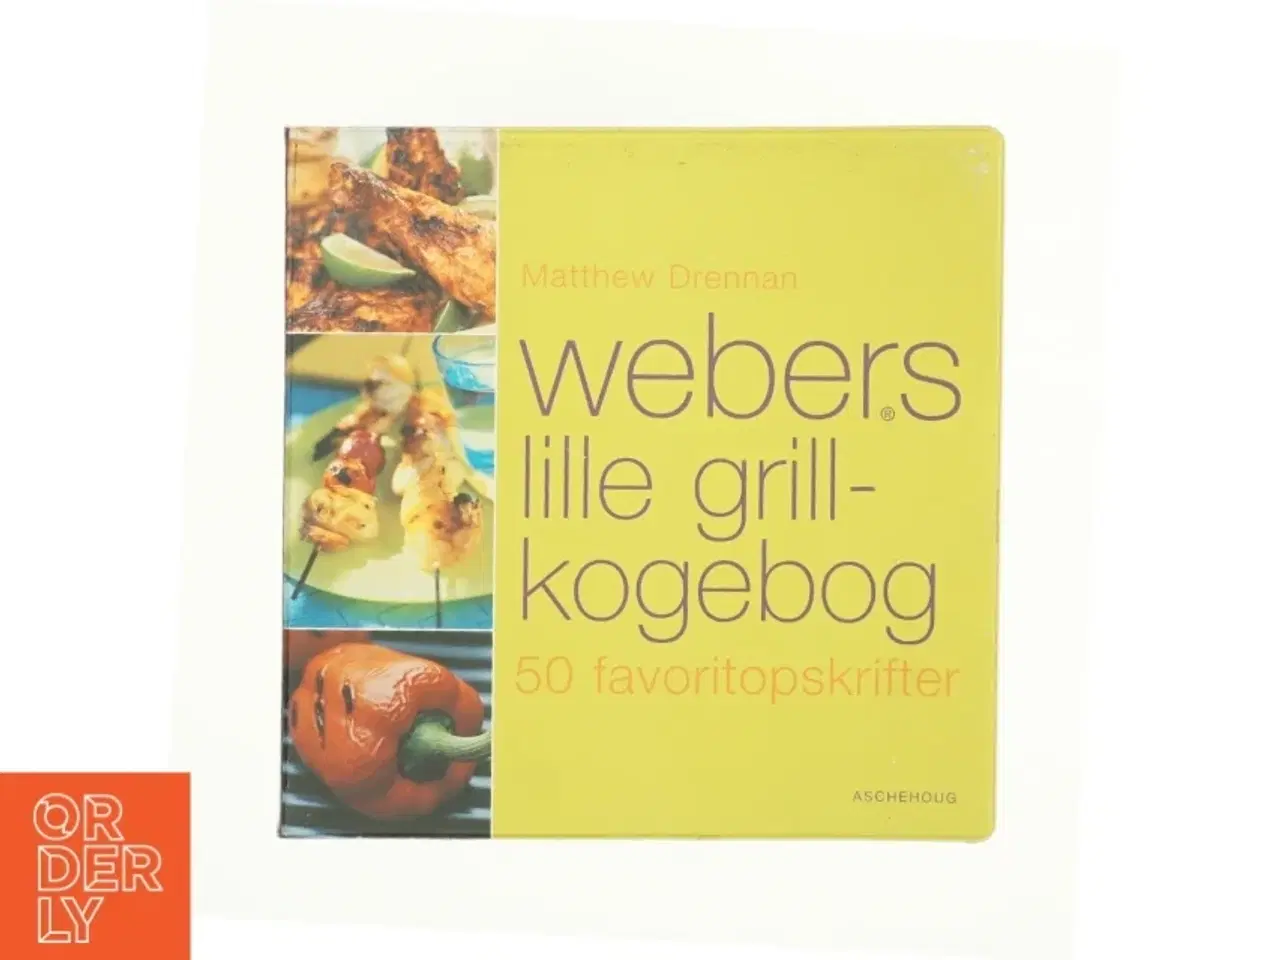 Billede 1 - Webers lille grill-kogebog af Metthrew Drennan